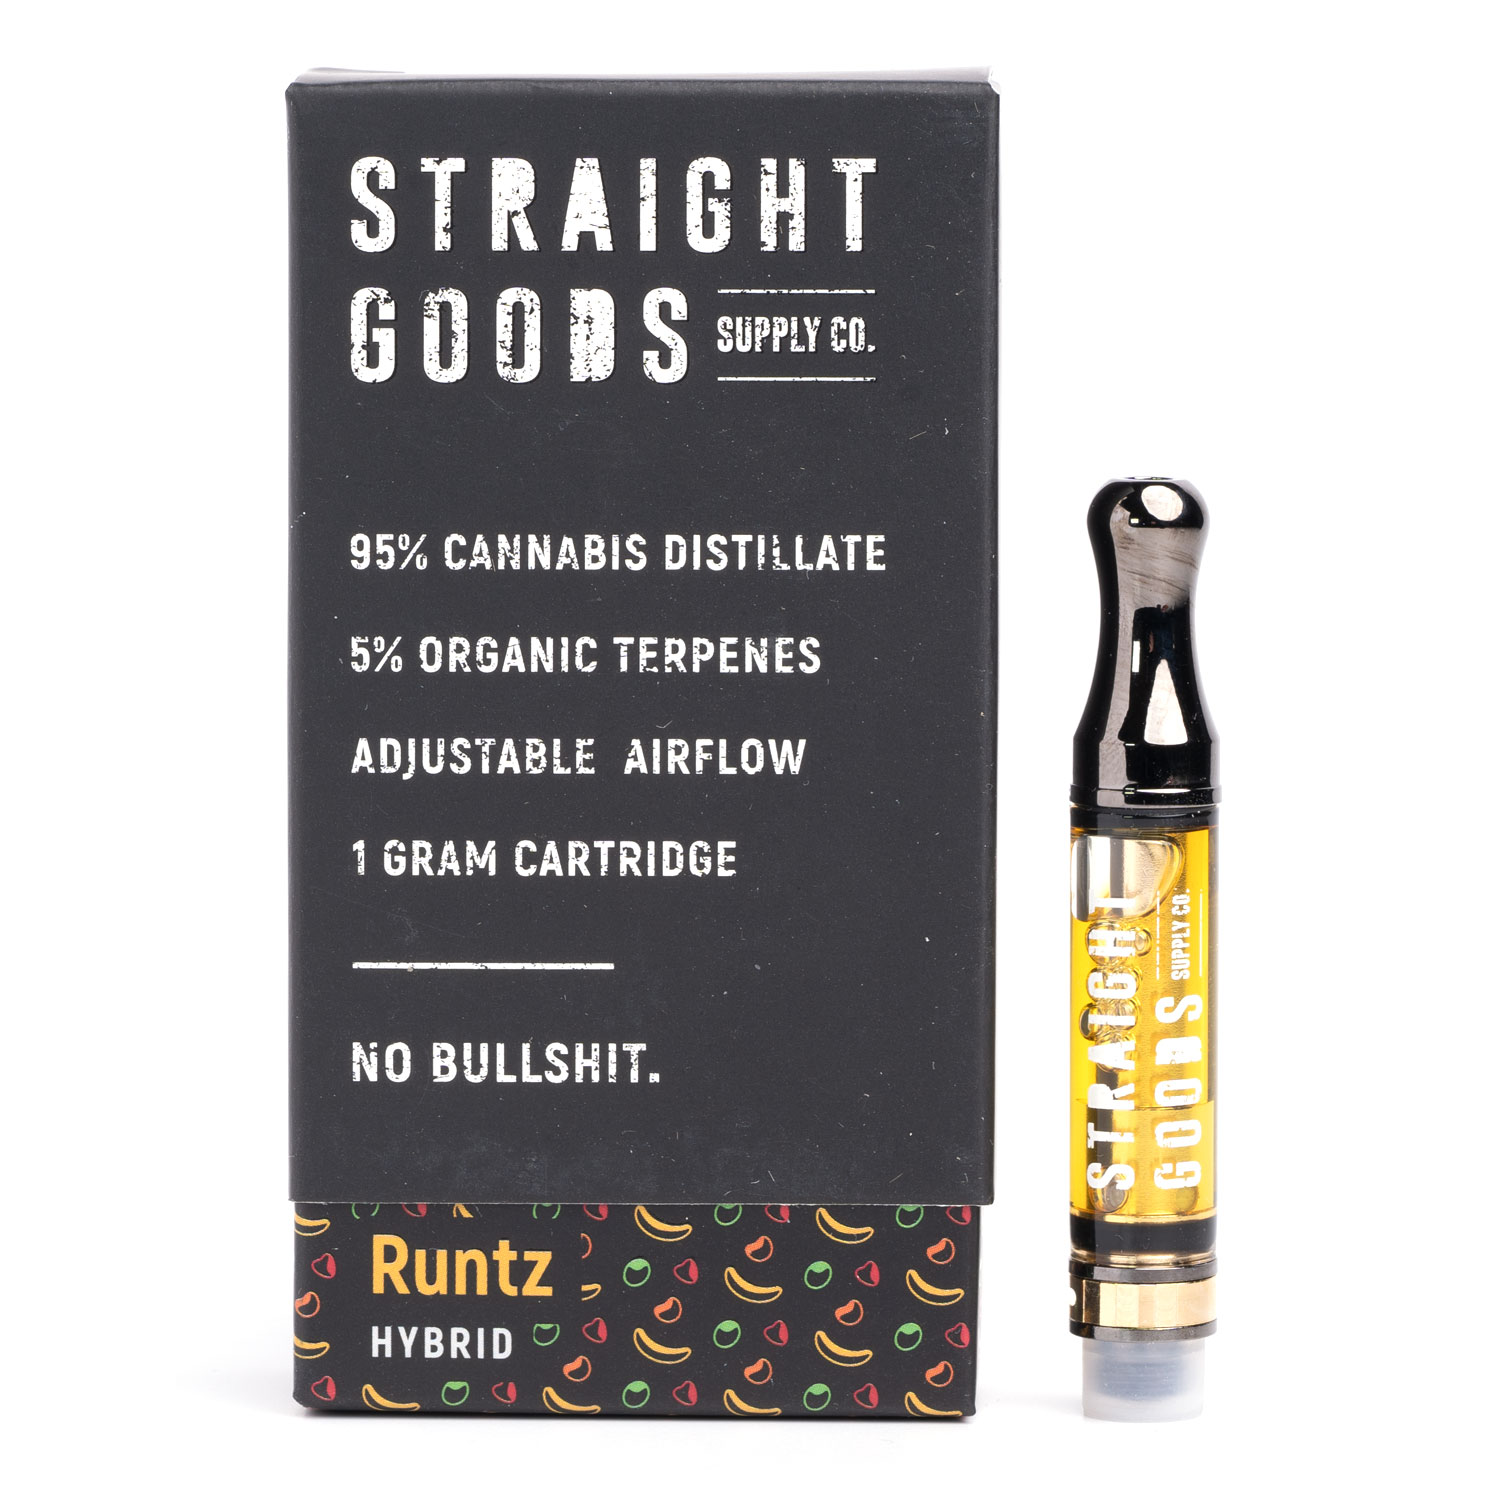 Striaght Goods vaporizer cartridges